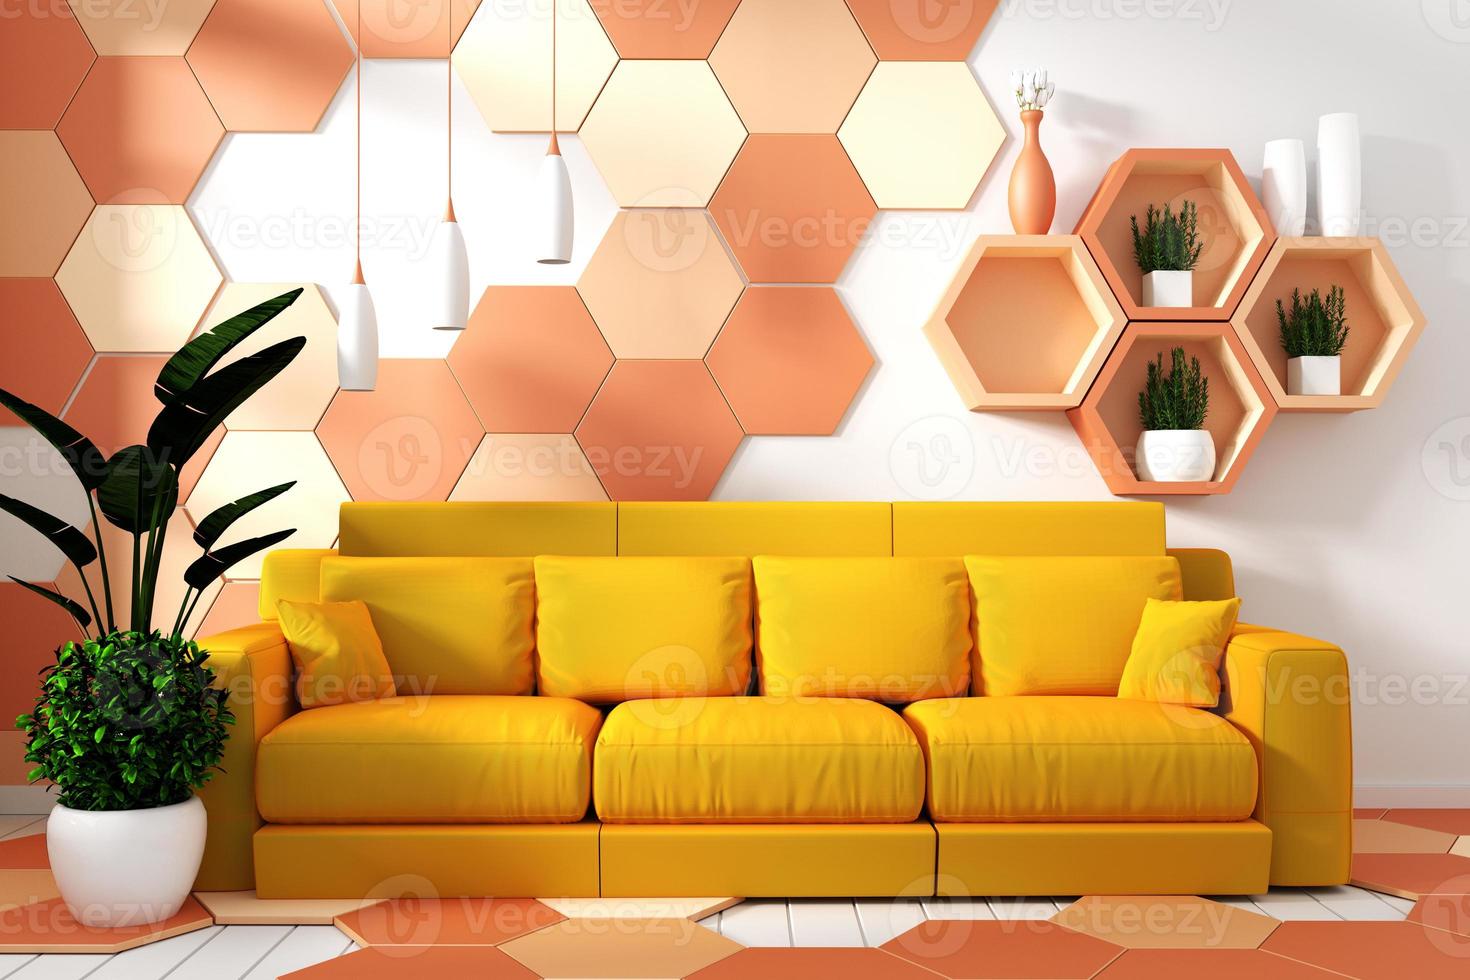 interno moderno del soggiorno con decorazione della poltrona e piante verdi su fondo esagonale giallo e arancione della parete di struttura delle mattonelle, design minimale, rendering 3d. foto